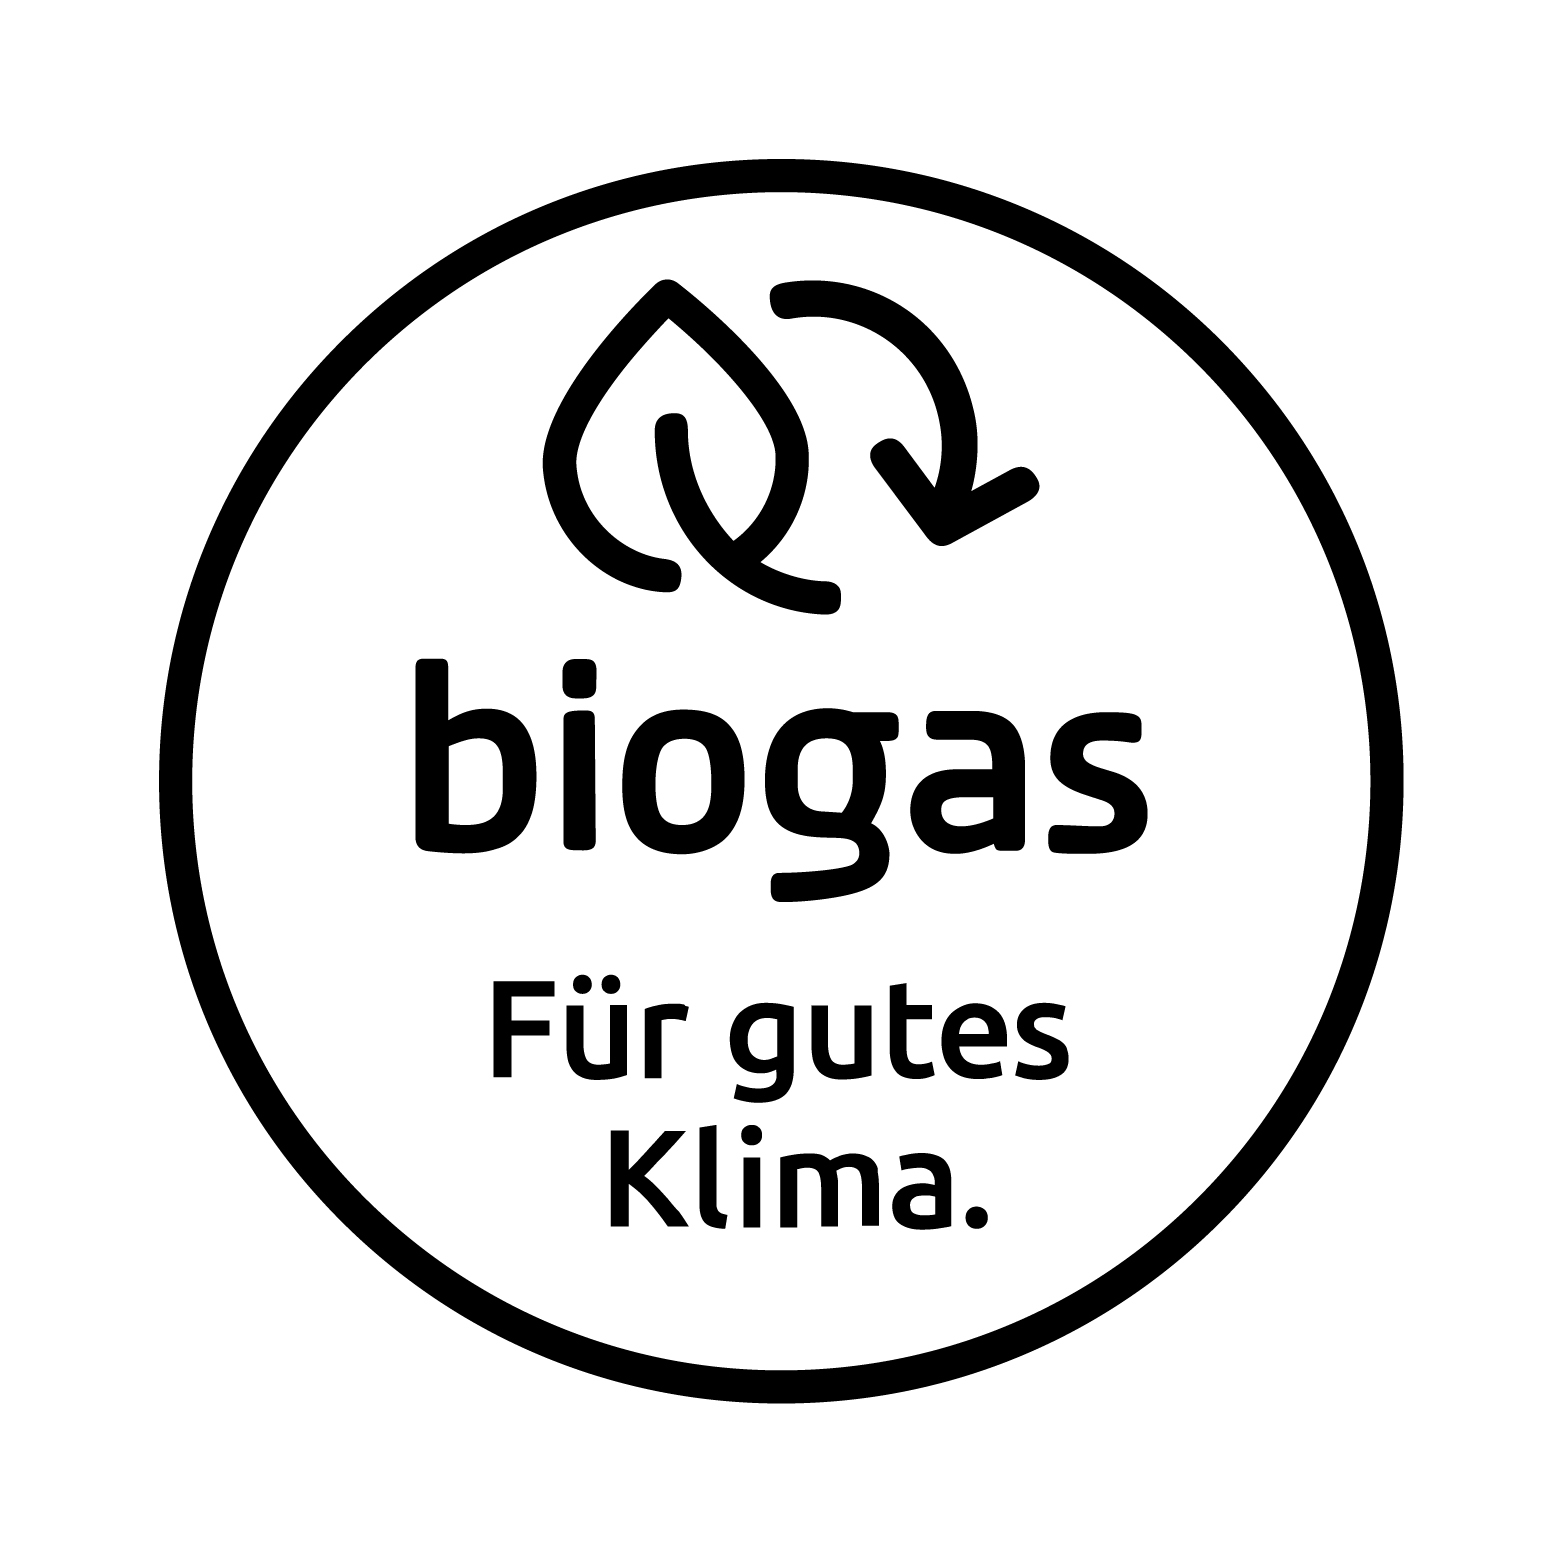 Das Siegel Biogas in Schwarz